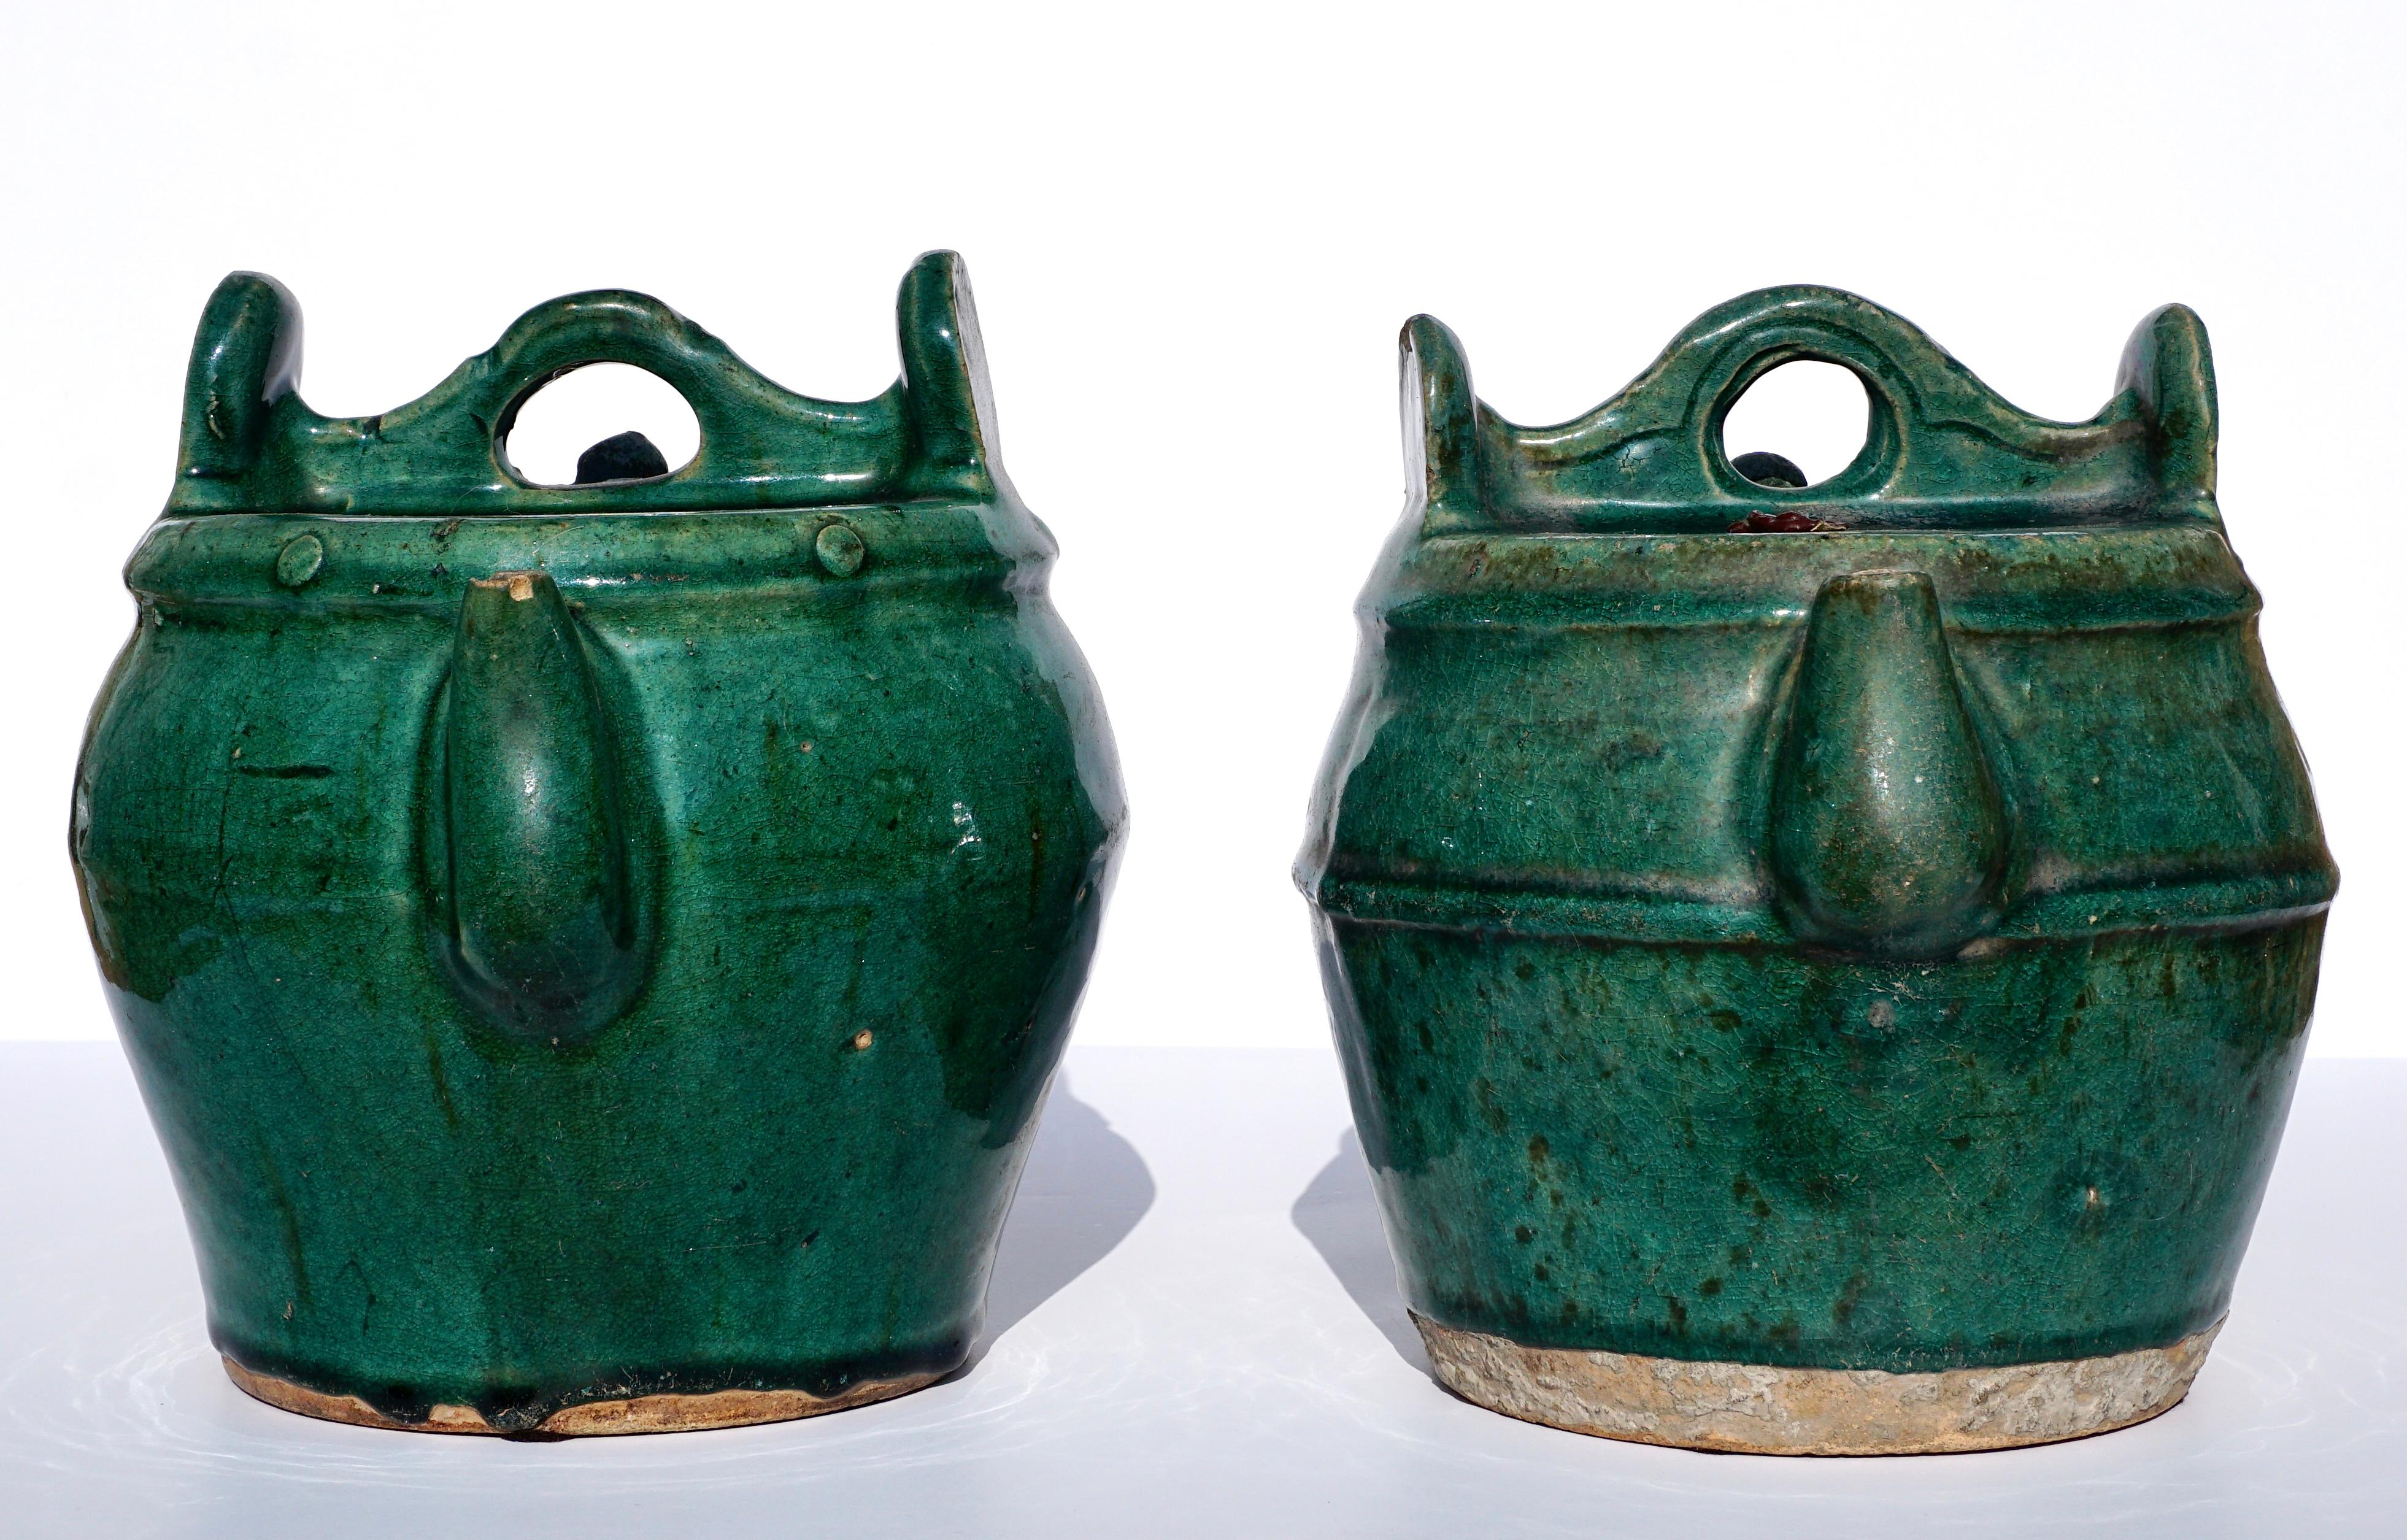 Ein Paar grün glasierte Sancai-Teekannen aus dem 19. Jahrhundert. Beide mit Henkeln, Ausgießern und Deckeln in Jochform. Beide tragen auch das offizielle rote Wachssiegel der Regierung aus der Zeit der Republik, was bedeutet, dass sie damals, vor